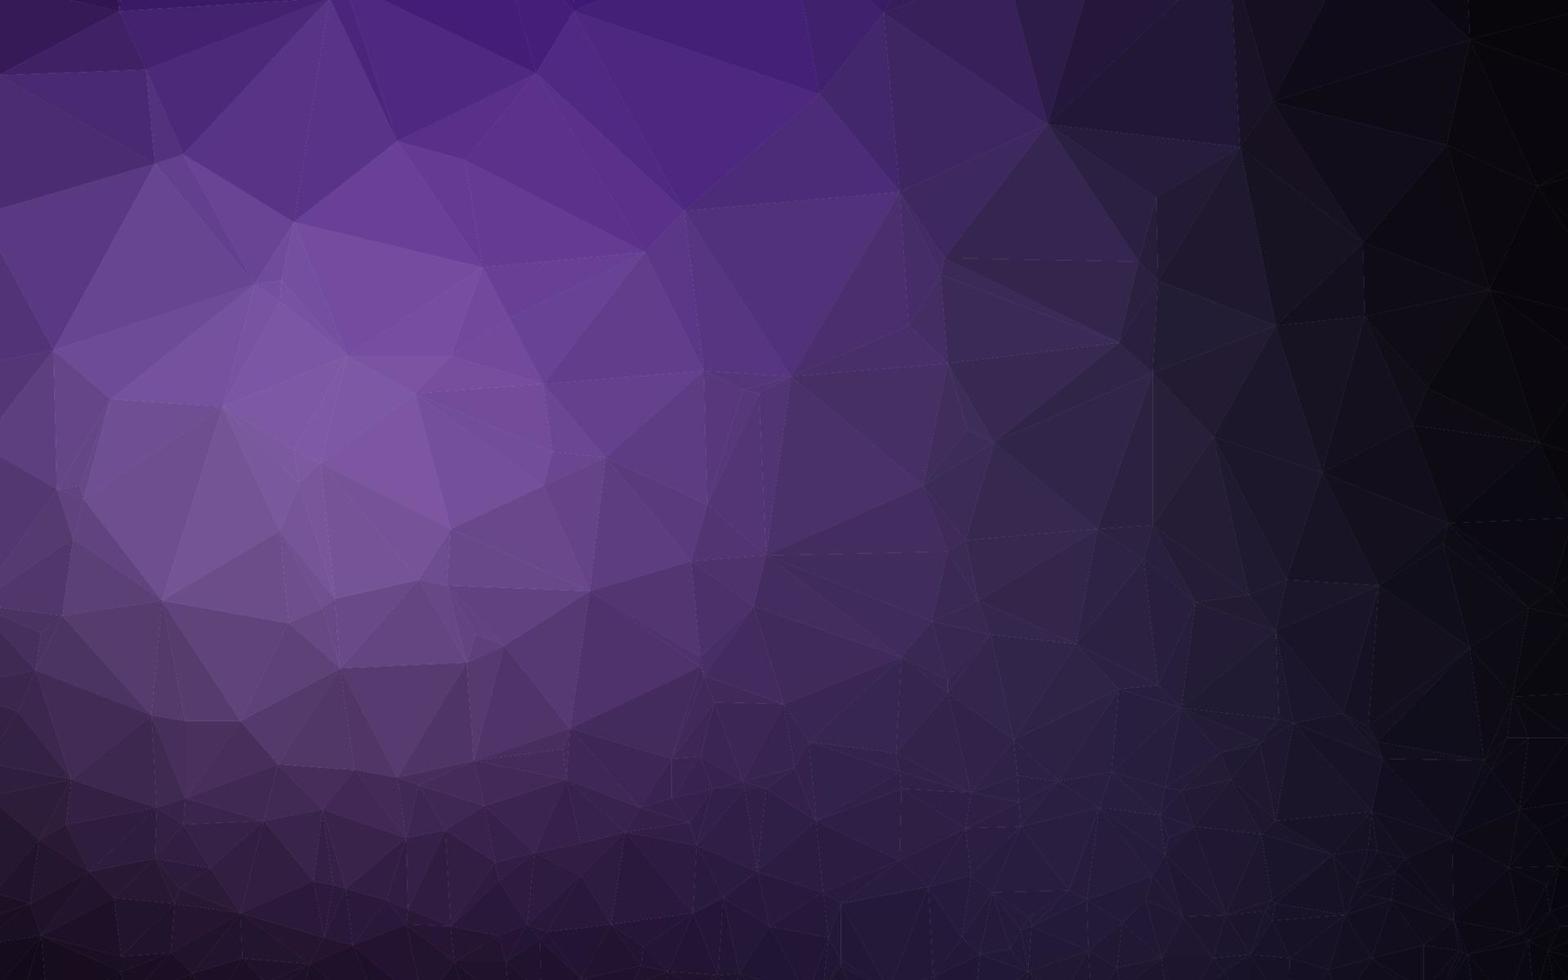 Fondo poligonal de vector púrpura oscuro.